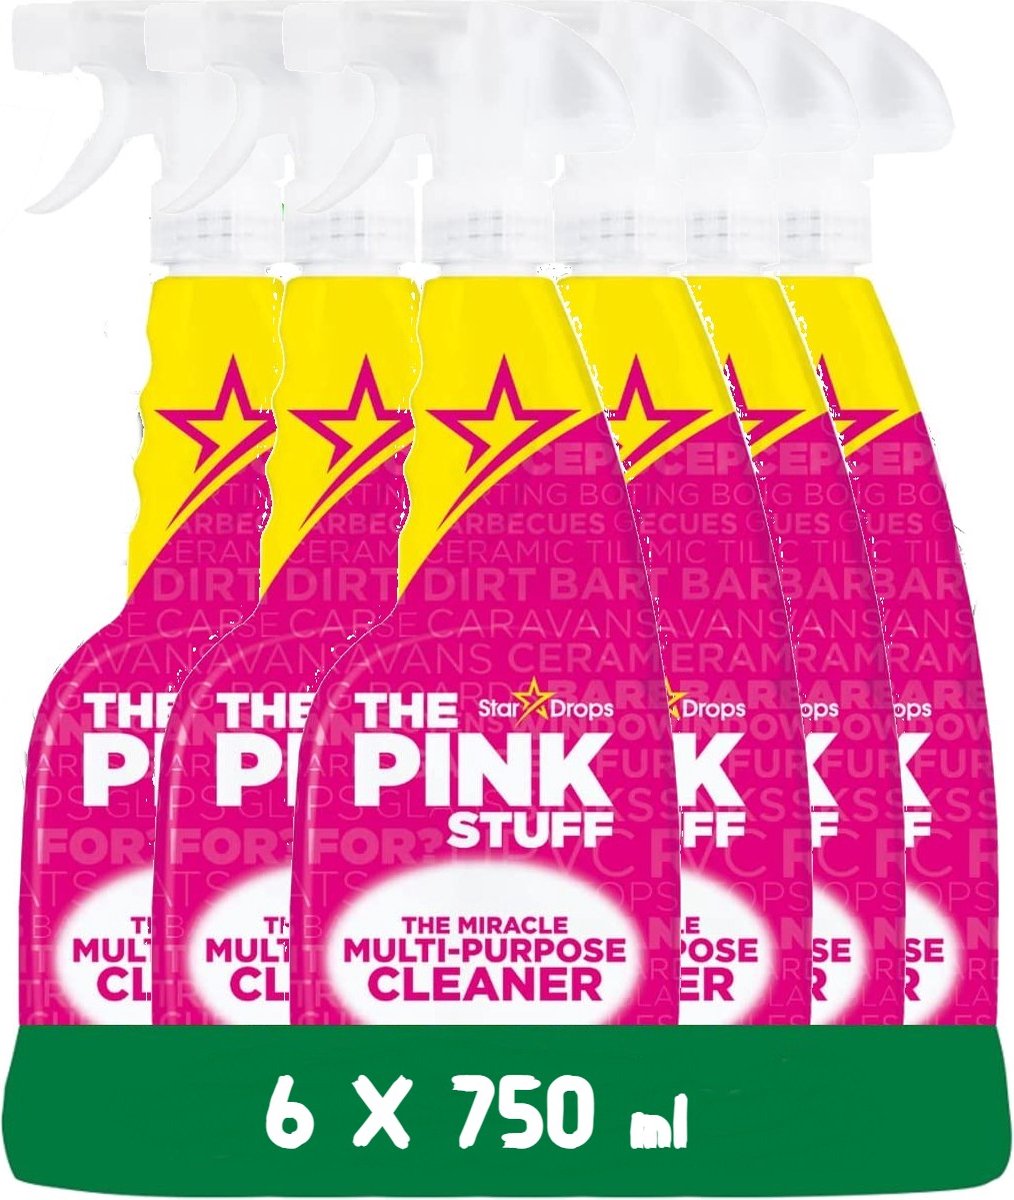 Spray nettoyant tout usage The Pink Stuff - 6 x 750 ml - Écologique